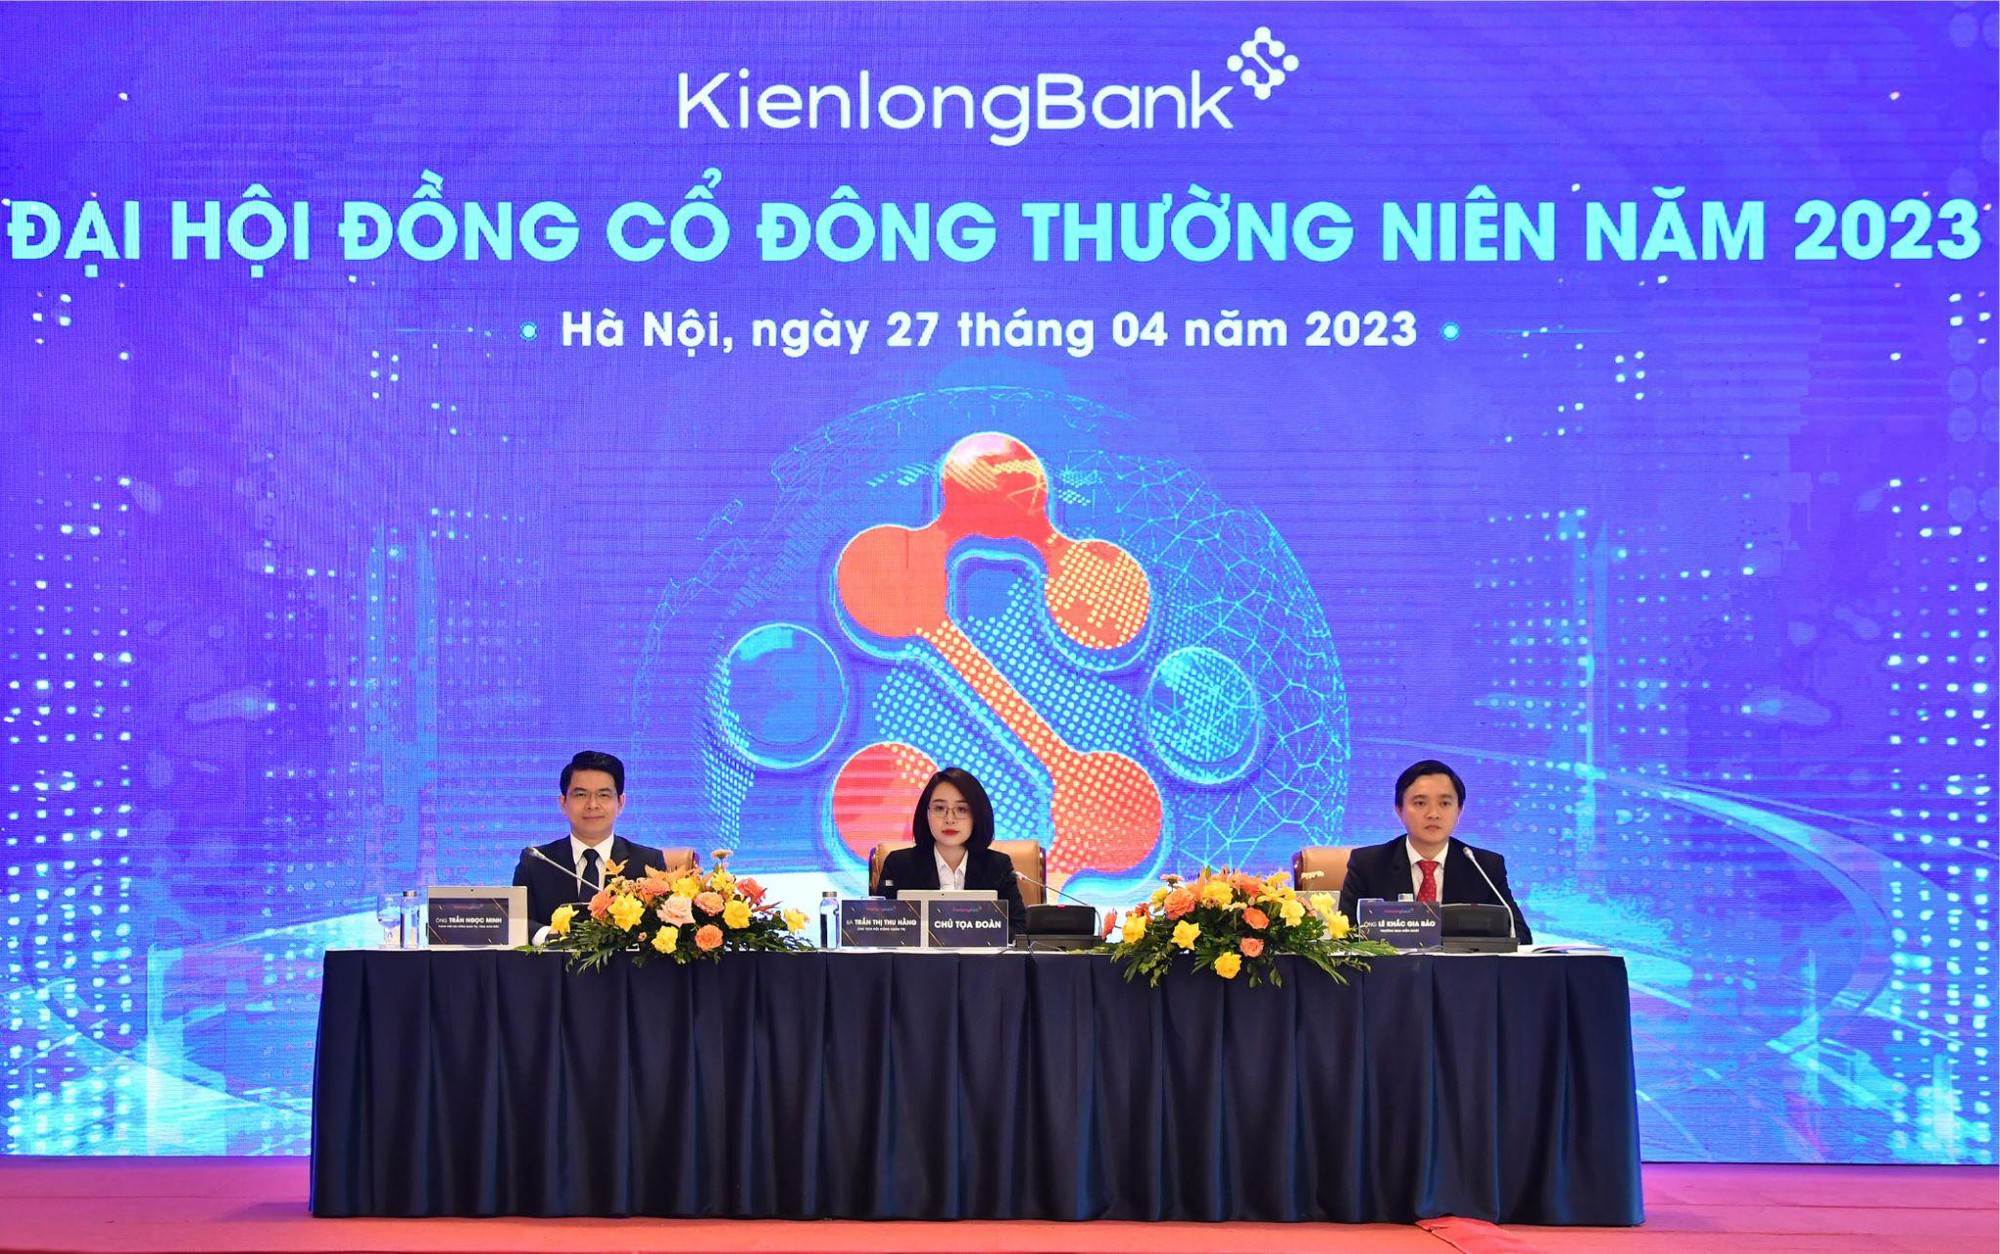 ĐHĐCĐ KienlongBank: Mục tiêu năm 2023 tăng trưởng ổn định, đẩy nhanh tốc độ chuyển đổi số toàn diện - Ảnh 1.